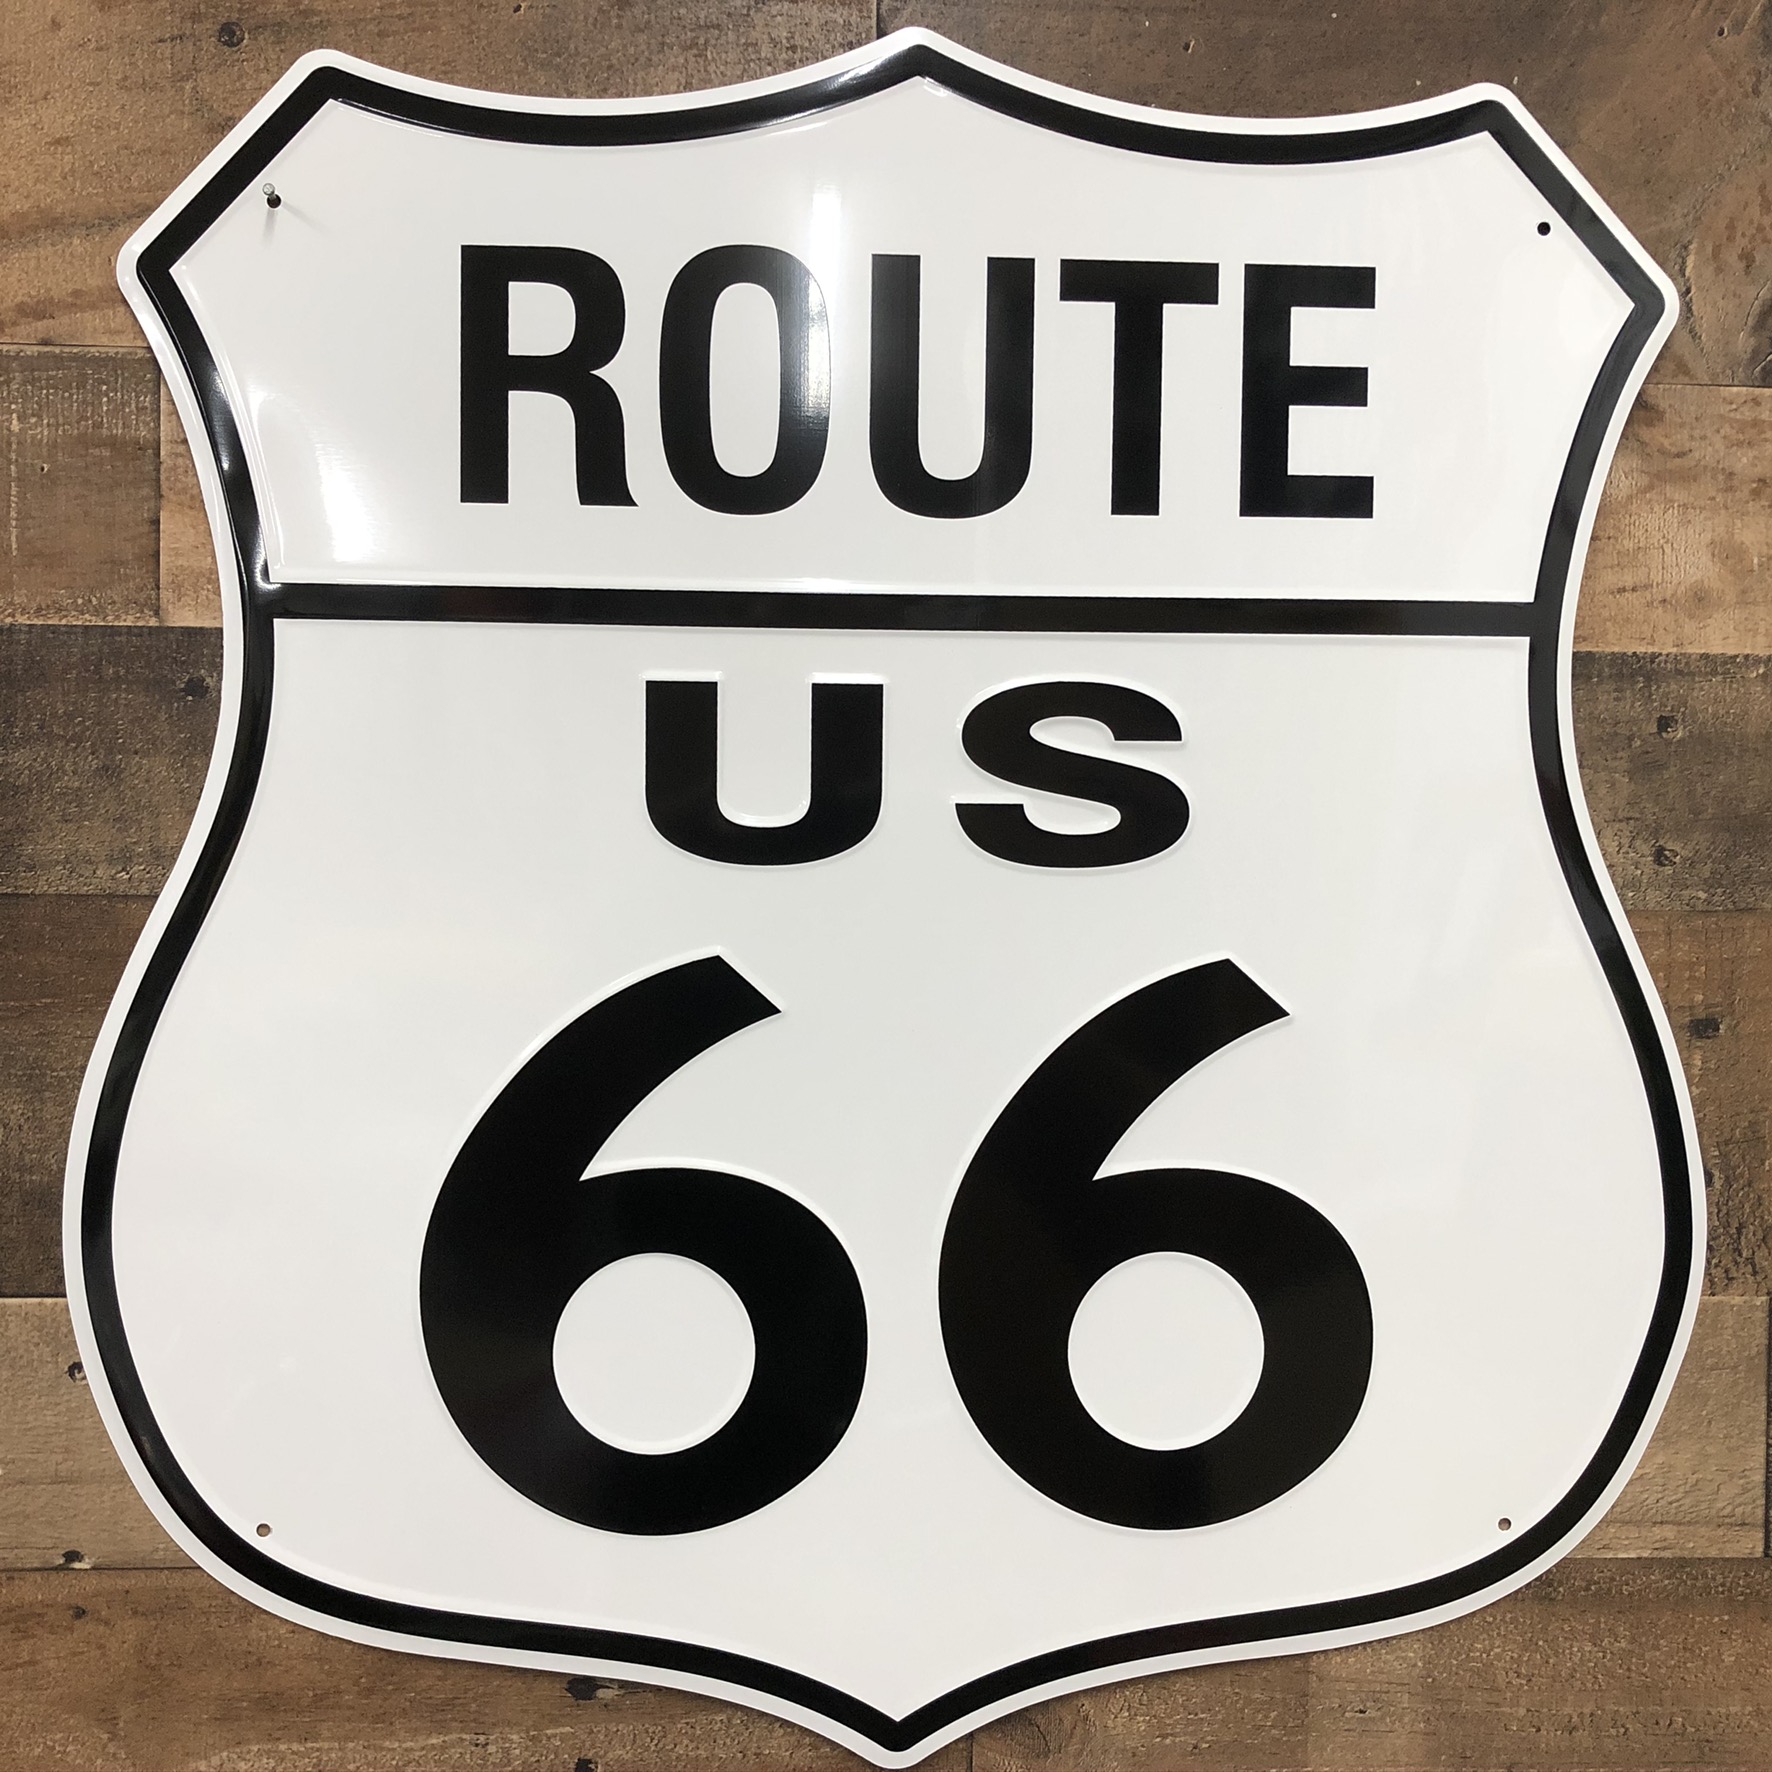 24" Route 66 Die cut Sign